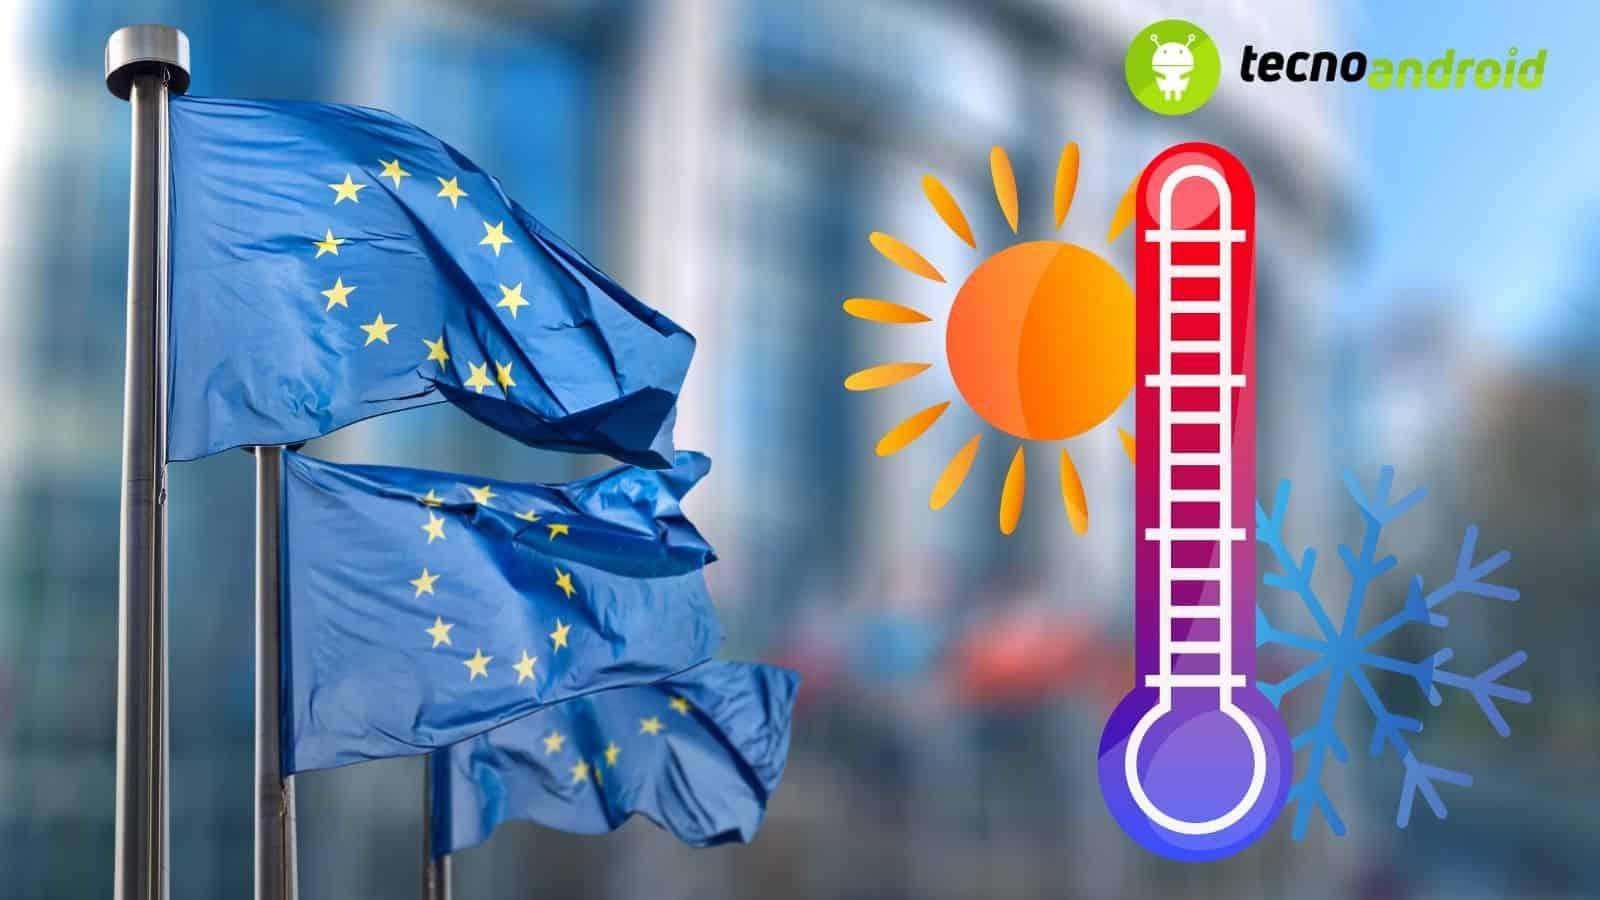 Europa: il livello di riscaldamento è più alto che in tutto il resto del mondo